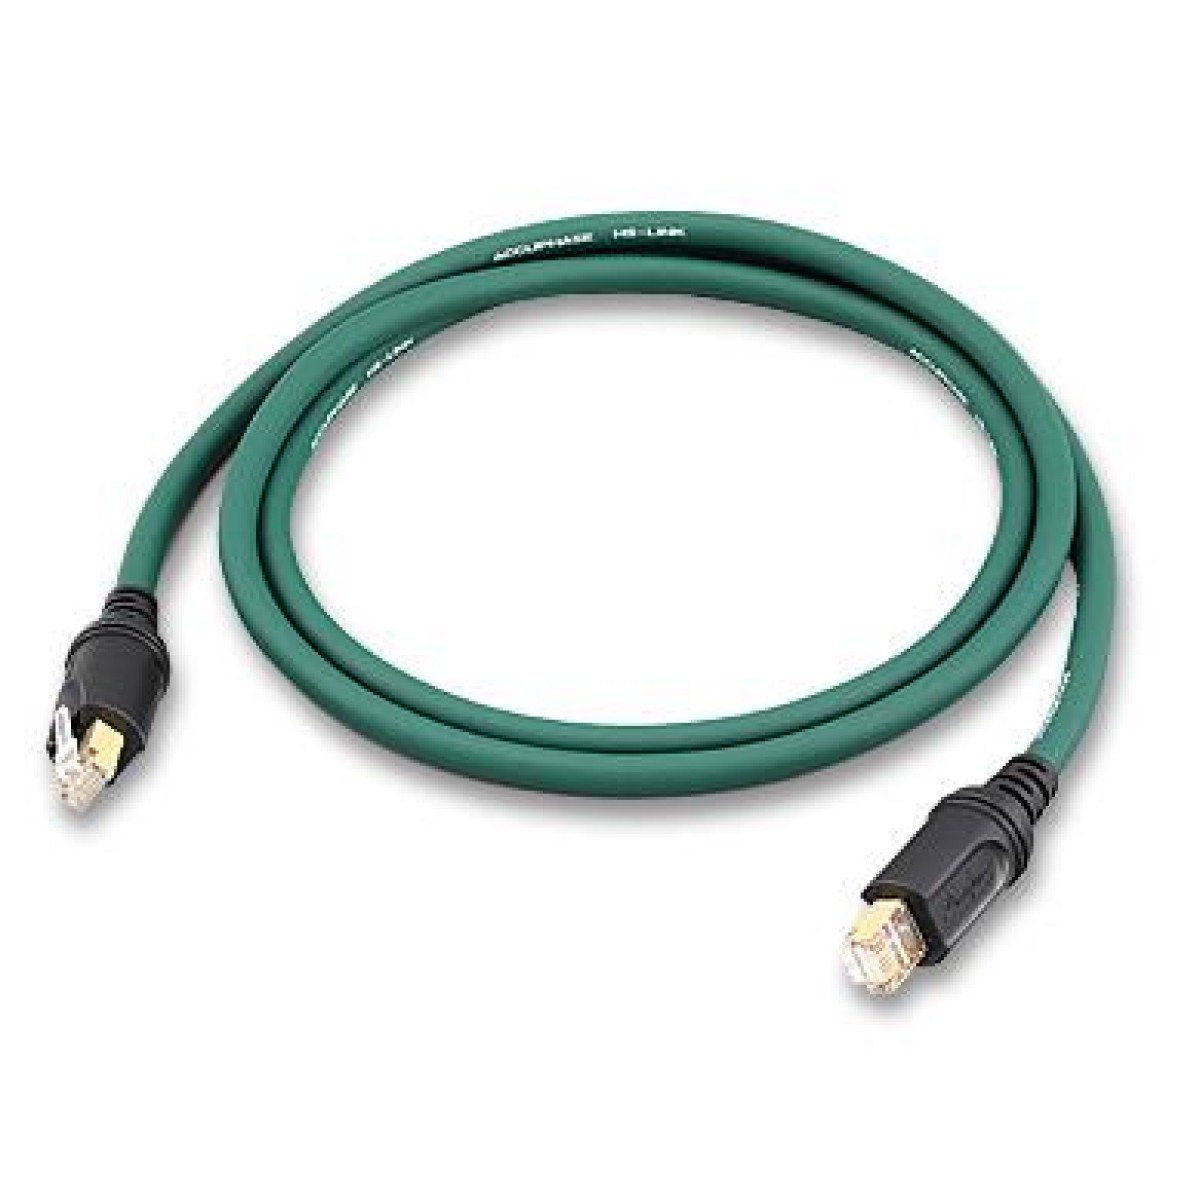 Hier sehen Sie den Artikel AHDL-15 HS-Link Cable aus der Kategorie Accessories Accuphase. Dieser Artikel ist erhältlich bei cebrands.ch